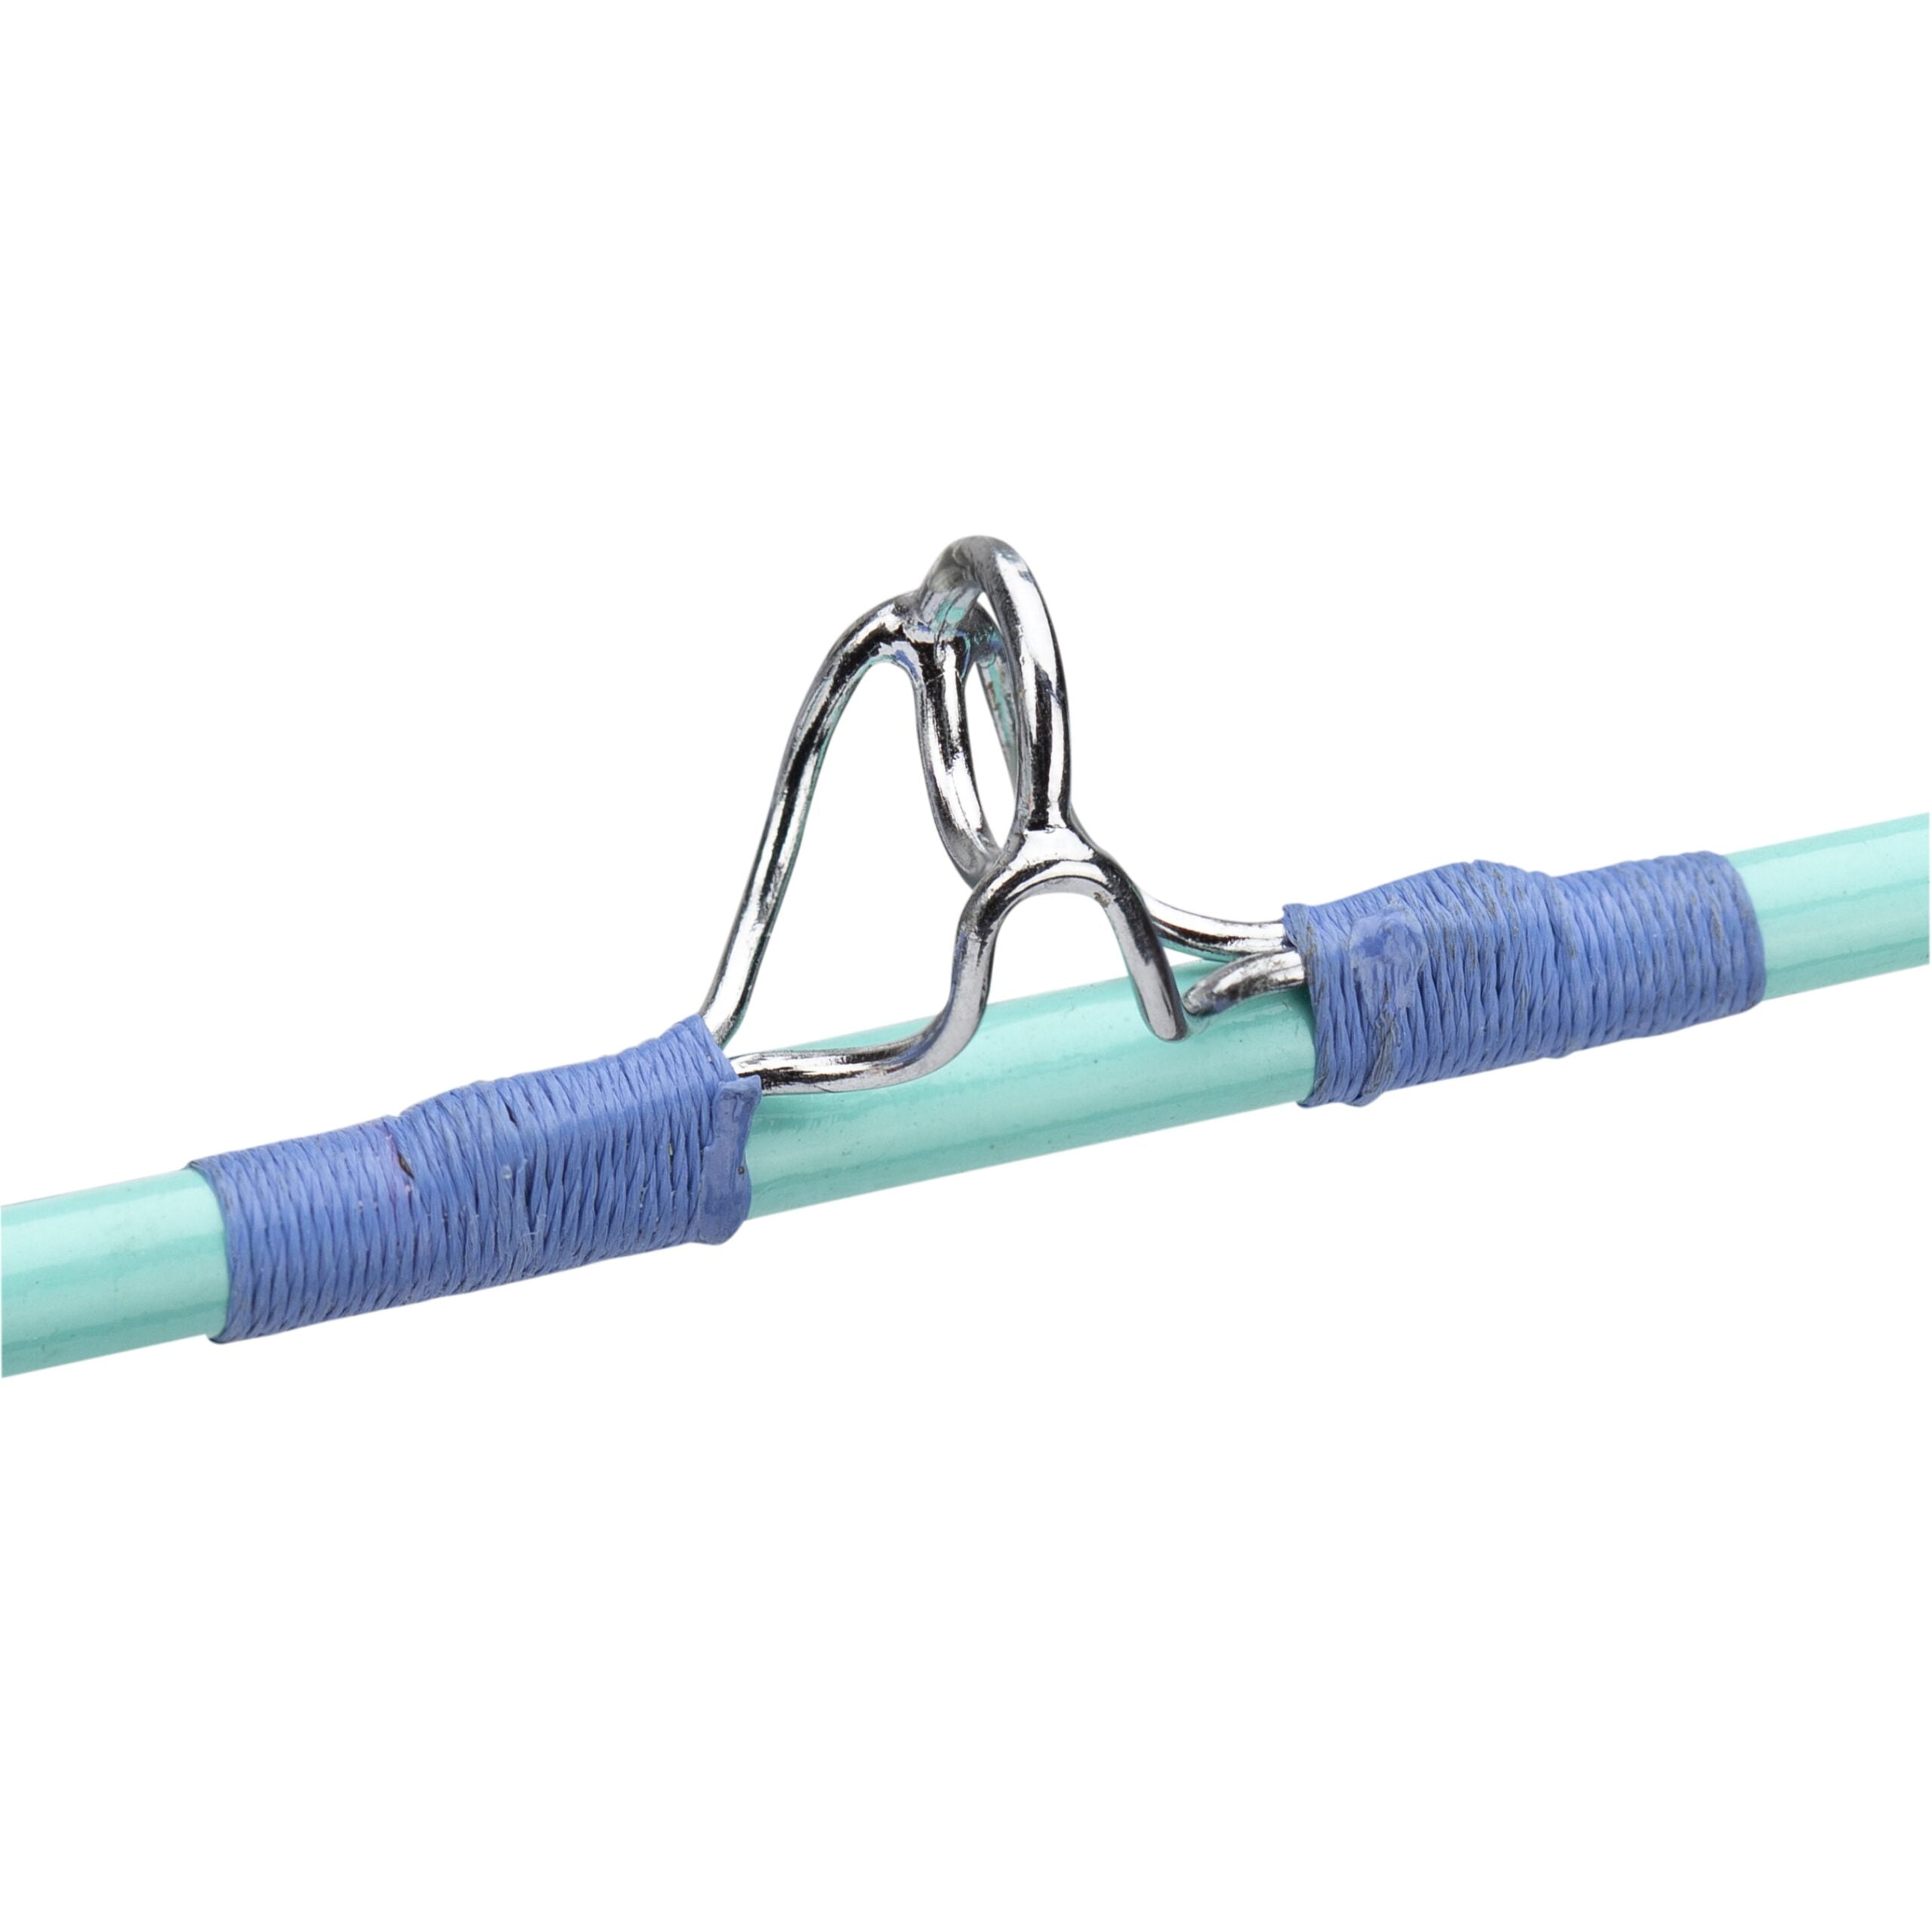 Minifigure, Utensil Fishing Rod / Pole, 8L : Part 93222